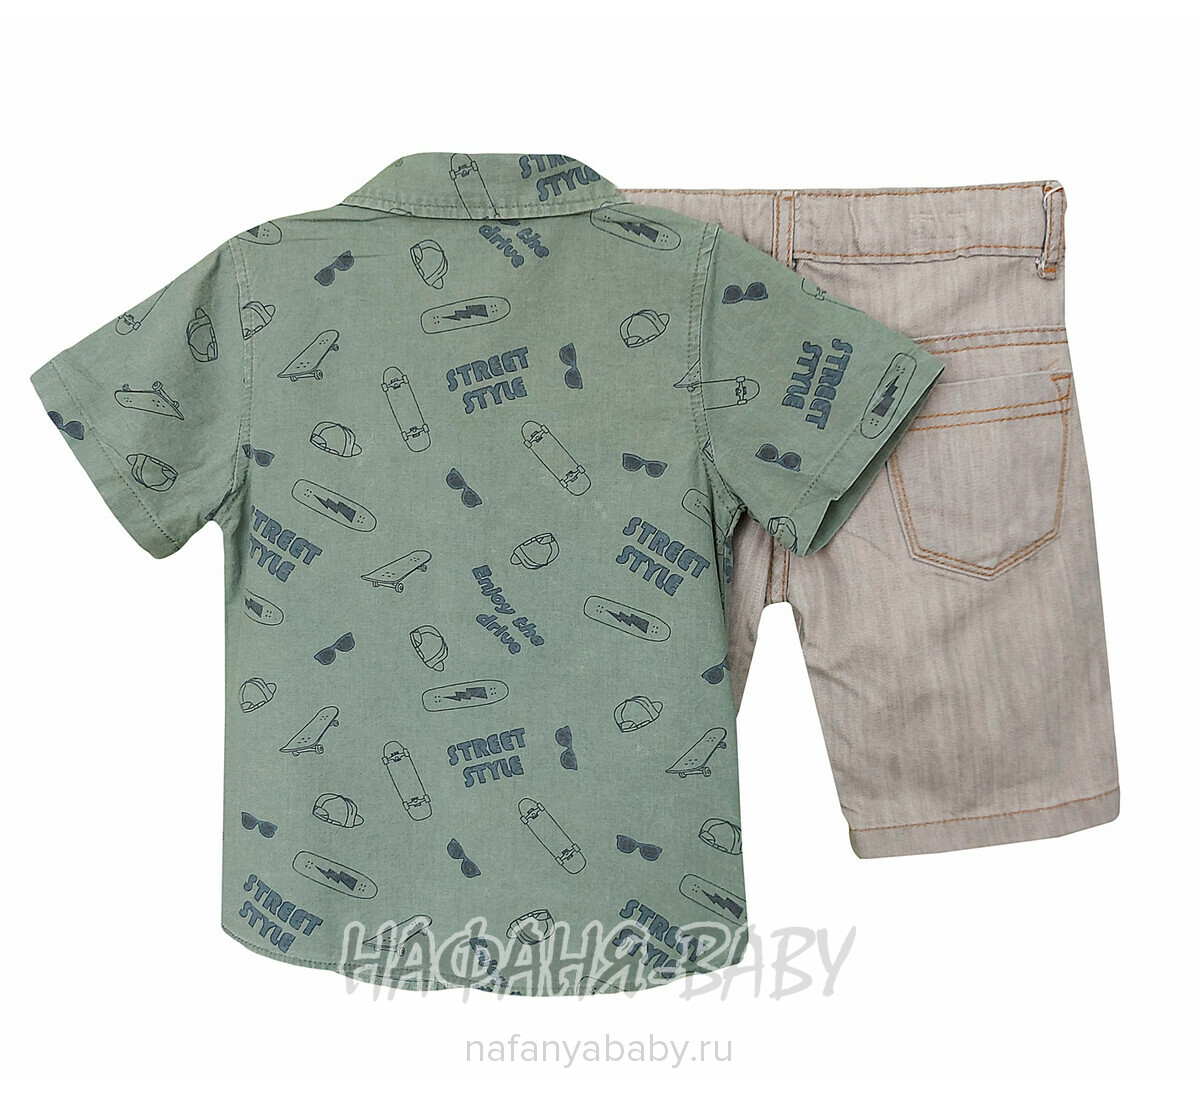 Детский костюм (рубашка + шорты) YTM арт. 506 от 1 до 4 лет, цвет темно-зеленый хаки, оптом Турция